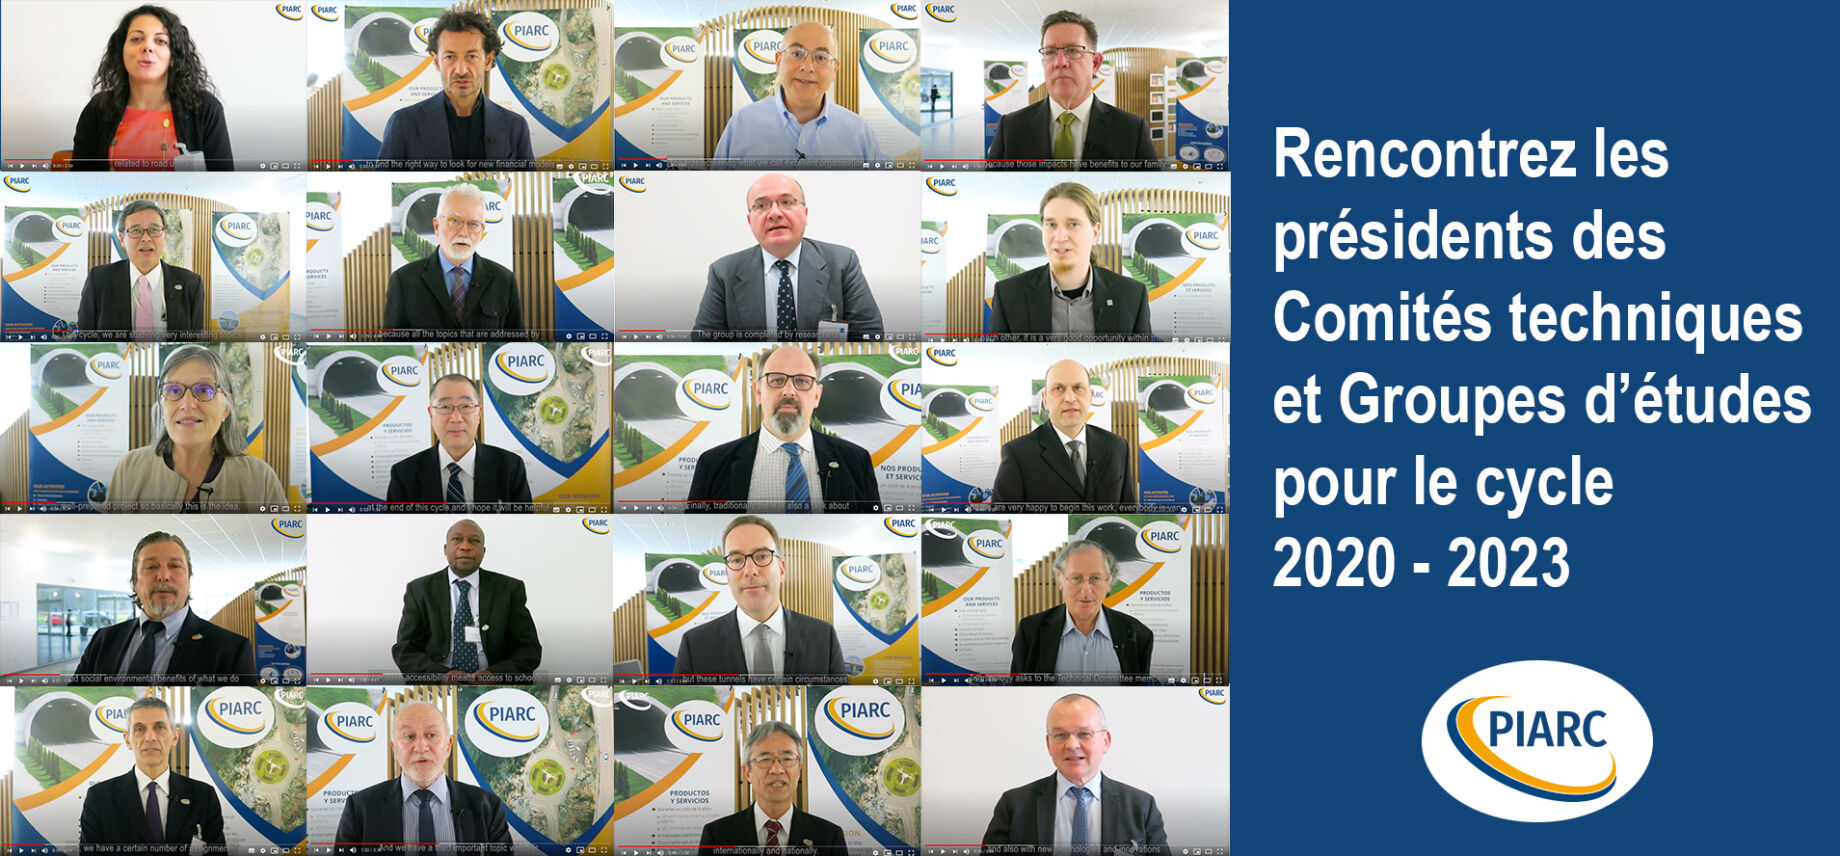 Rencontrez les présidents des 22 Comités techniques et Groupes d'études pour le cycle de travail 2020 - 2023